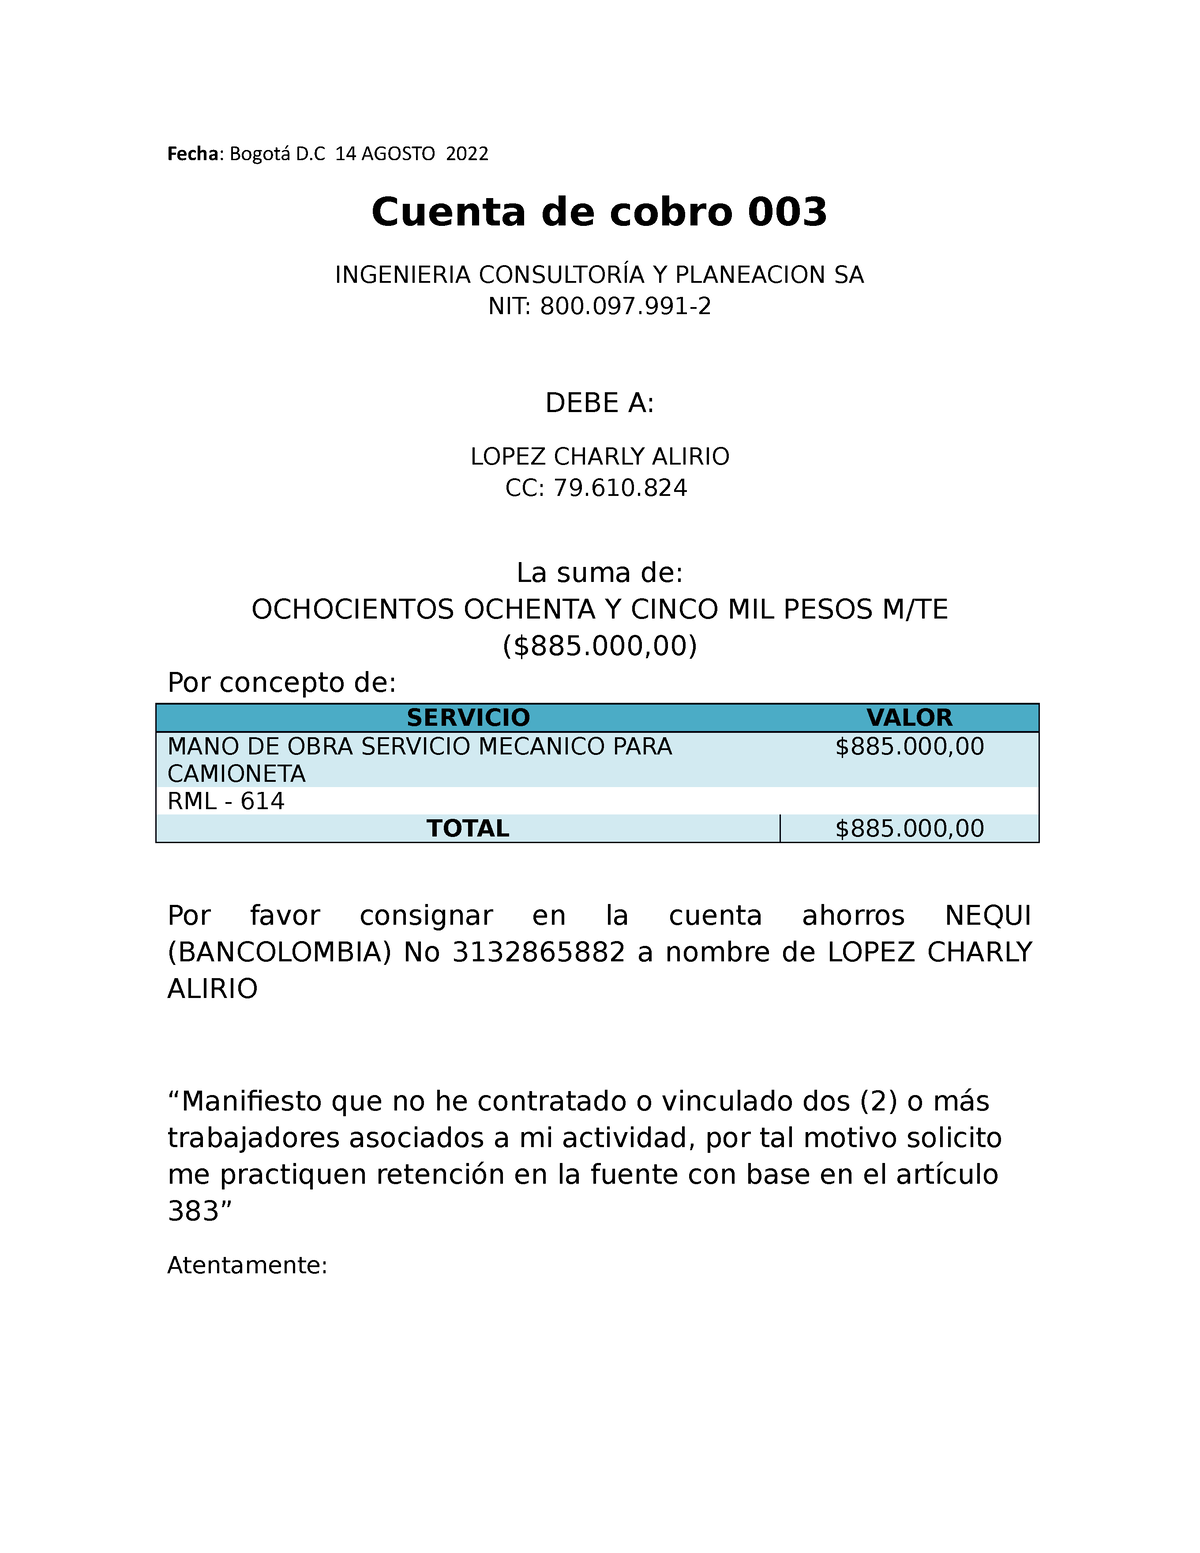 Modelo cuenta de cobro 383 - Fecha: Bogotá D 14 AGOSTO 2022 Cuenta de cobro  003 INGENIERIA - Studocu